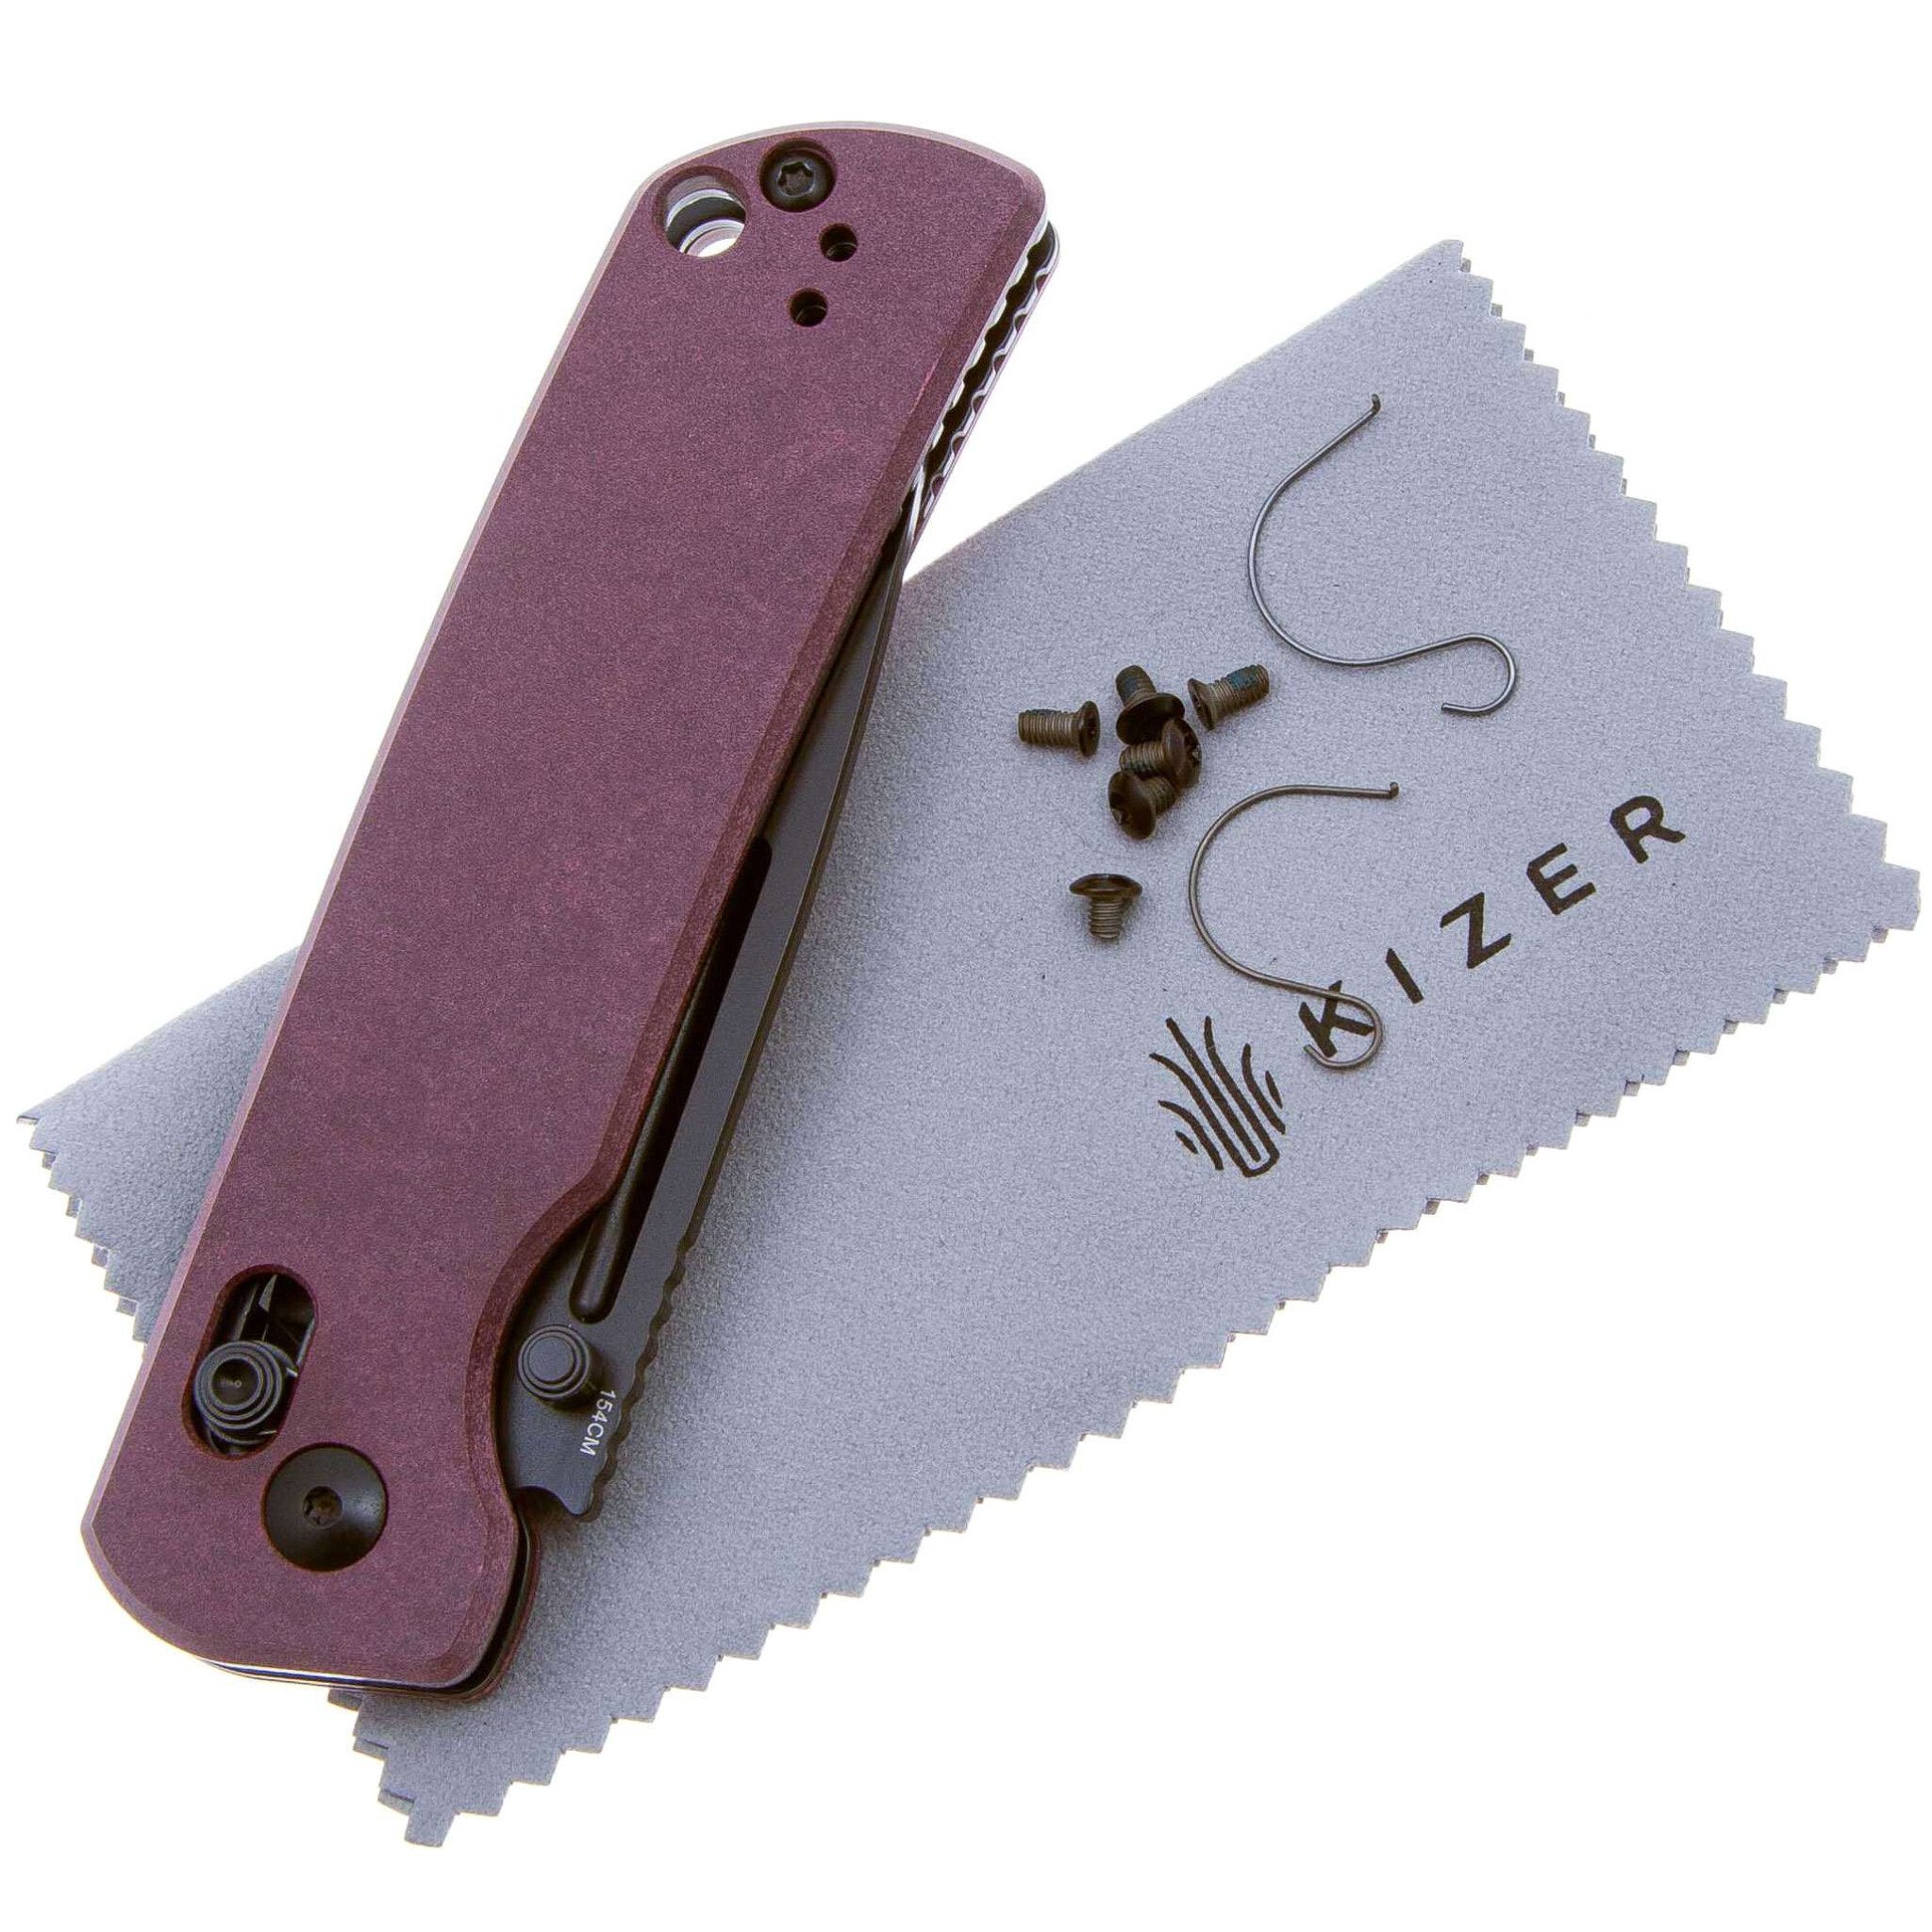 Складной нож Kizer Escort, сталь 154CM, рукоять Richlite, фиолетовый - фото 5